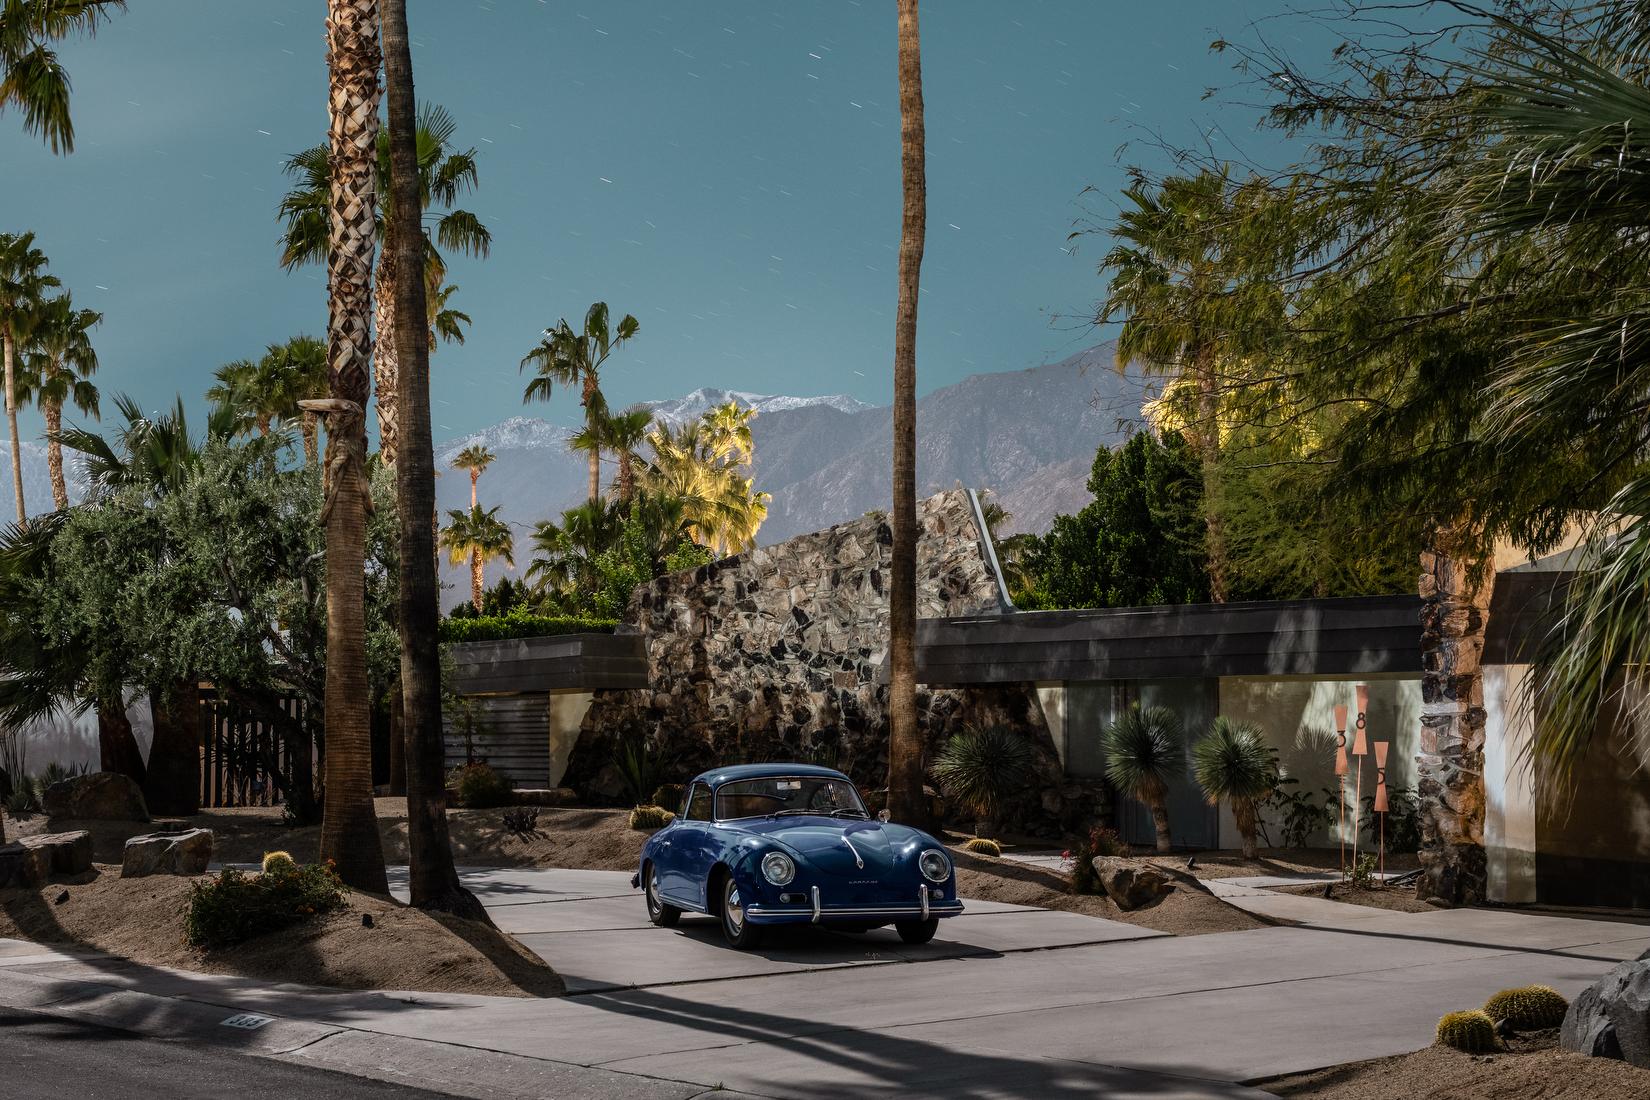 Tom Blachford Landscape Print - Mid Century Blue 356 Porsche, Midnight Modern Architecture Palm Springs